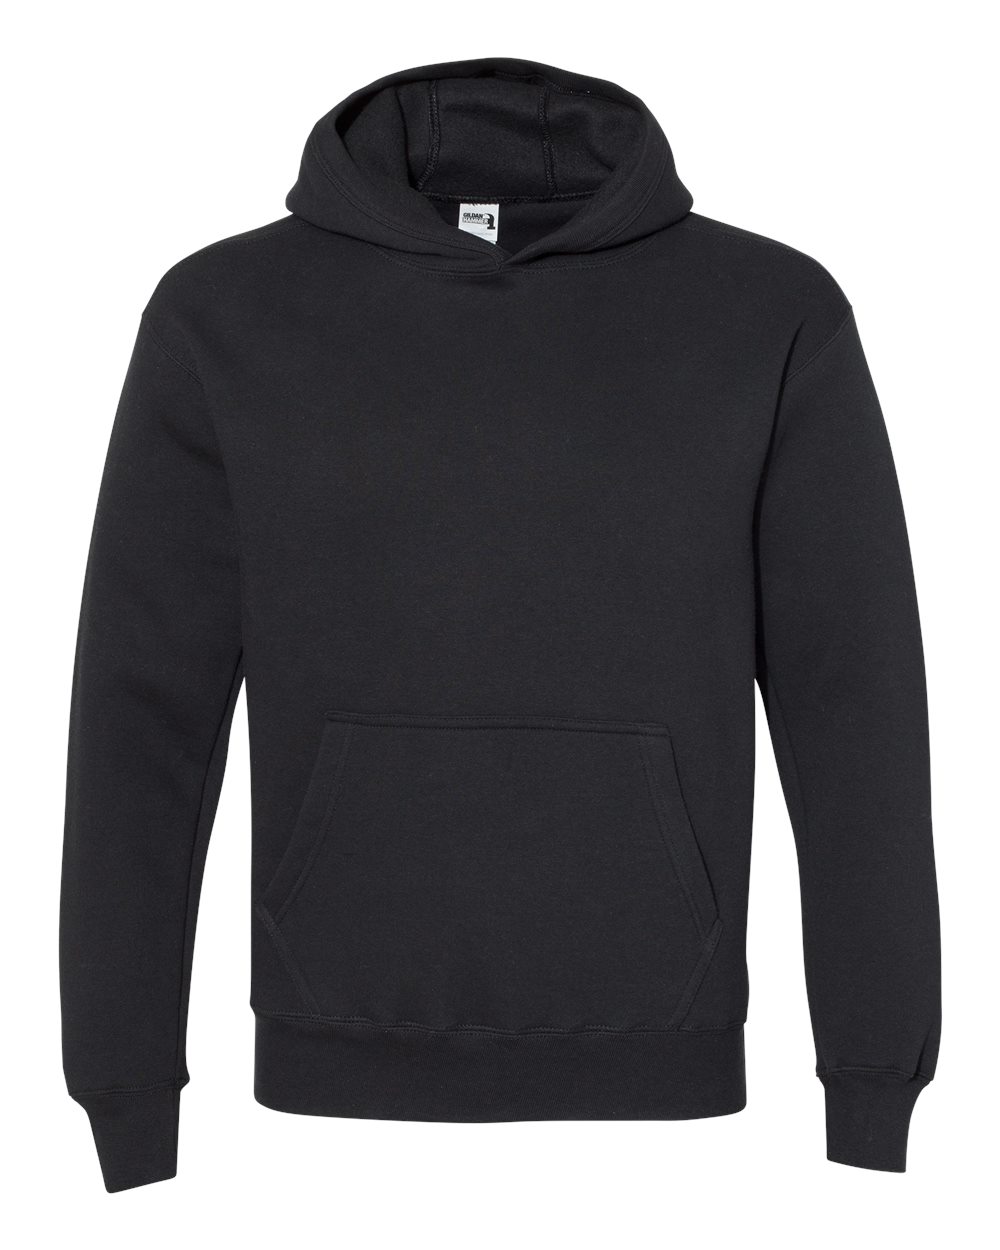 Gildan Mens Hammer Fleece Hooded Sweatshirt Blank HF500 up to 3XL | eBay